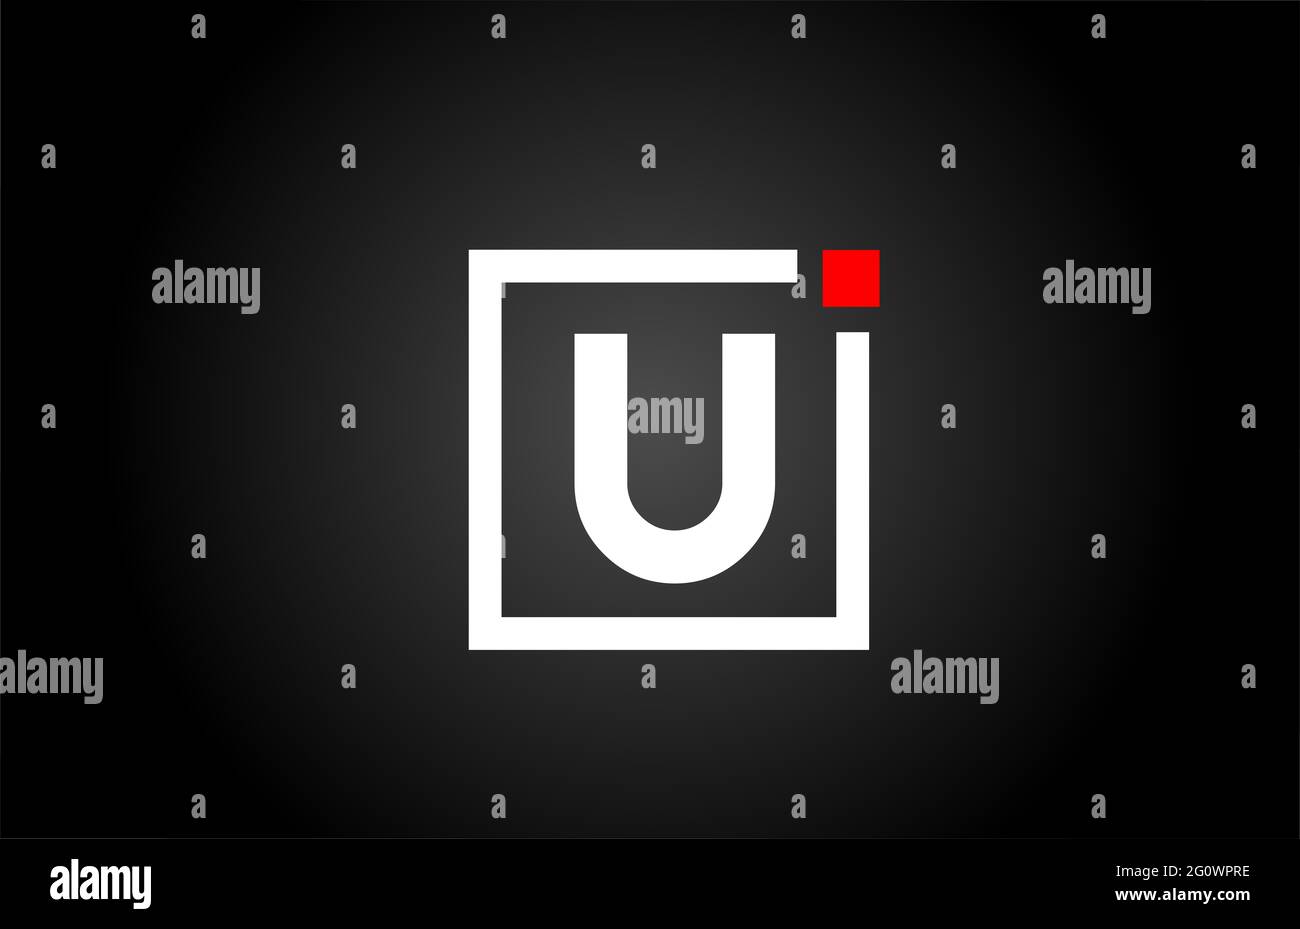 U logo dell'icona della lettera alfabetica in bianco e nero. Design aziendale e aziendale con punto quadrato e rosso. Modello di identità aziendale creativa Foto Stock